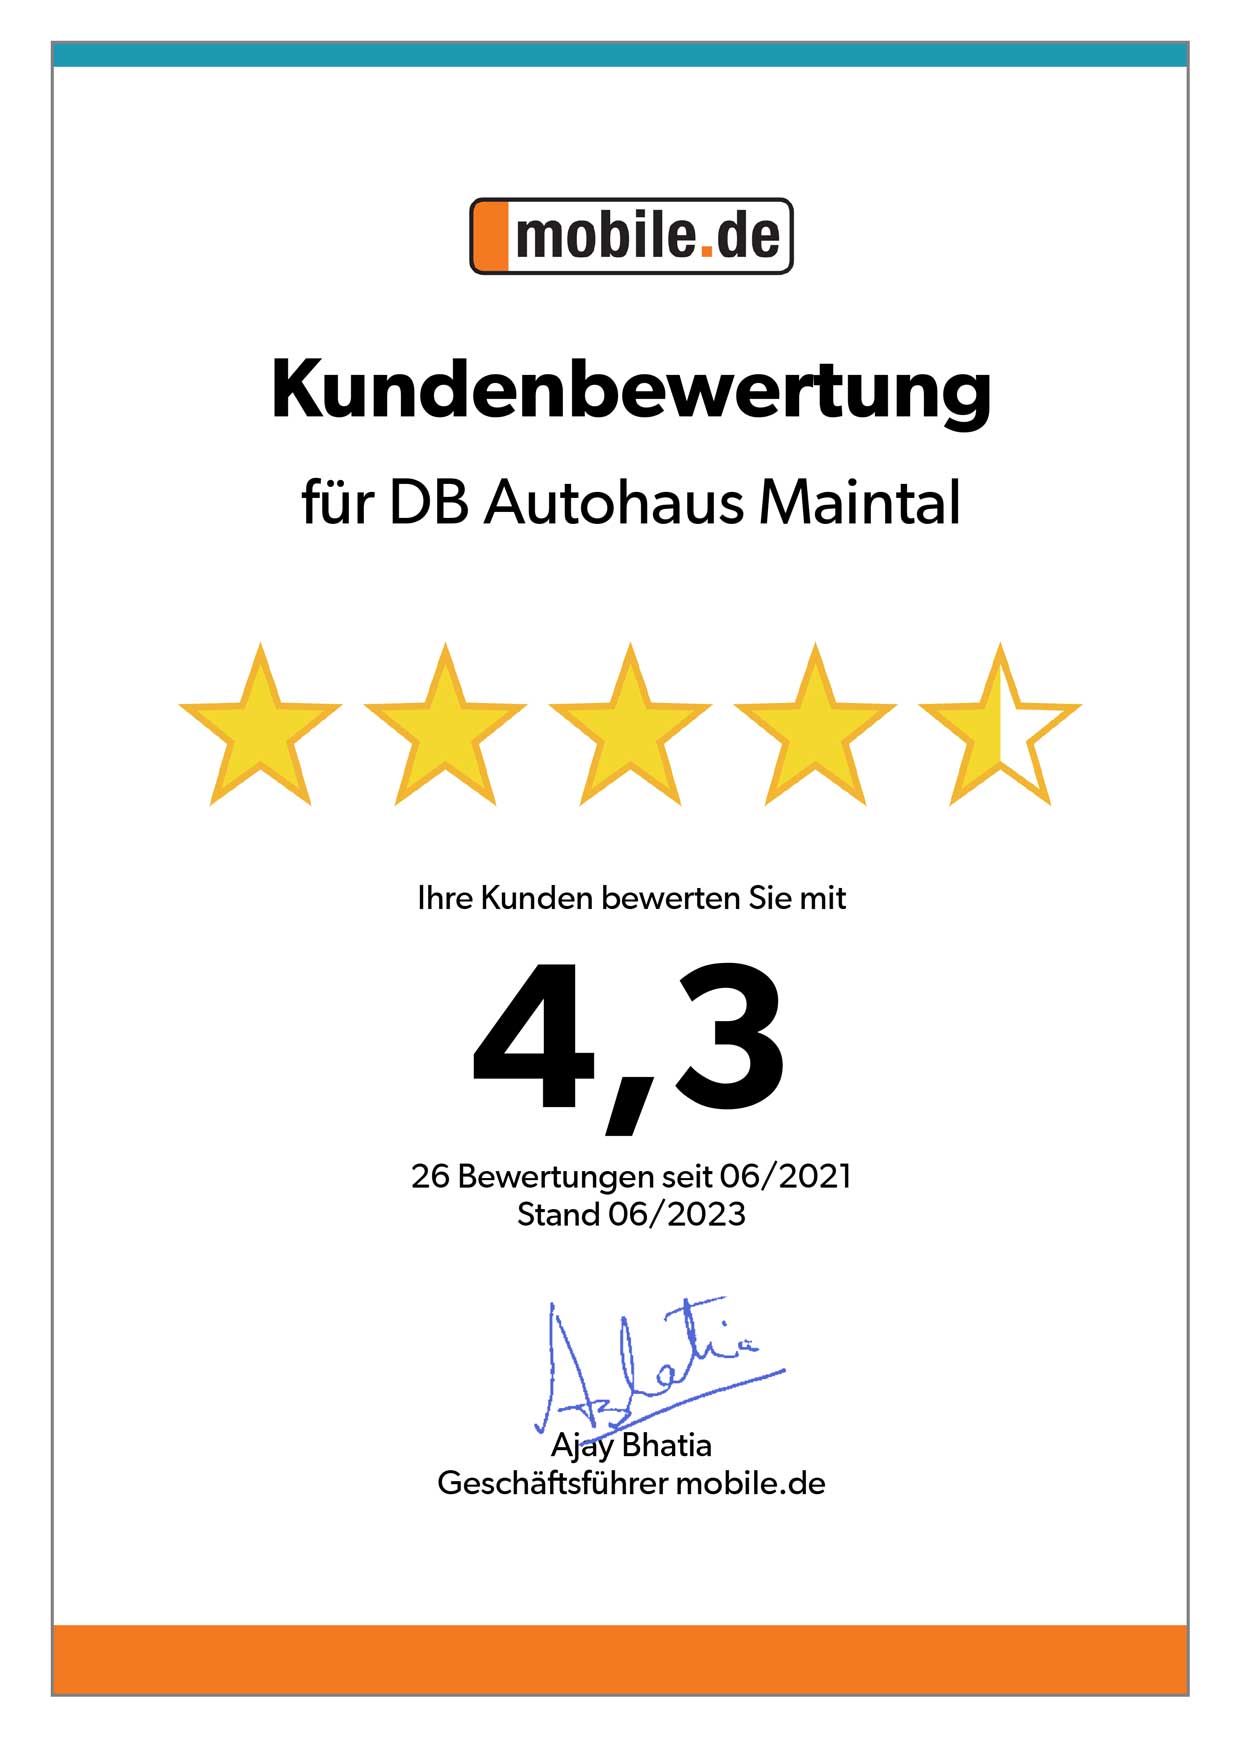 Auszeichnung von mobile.de für DB Autohaus Maintal